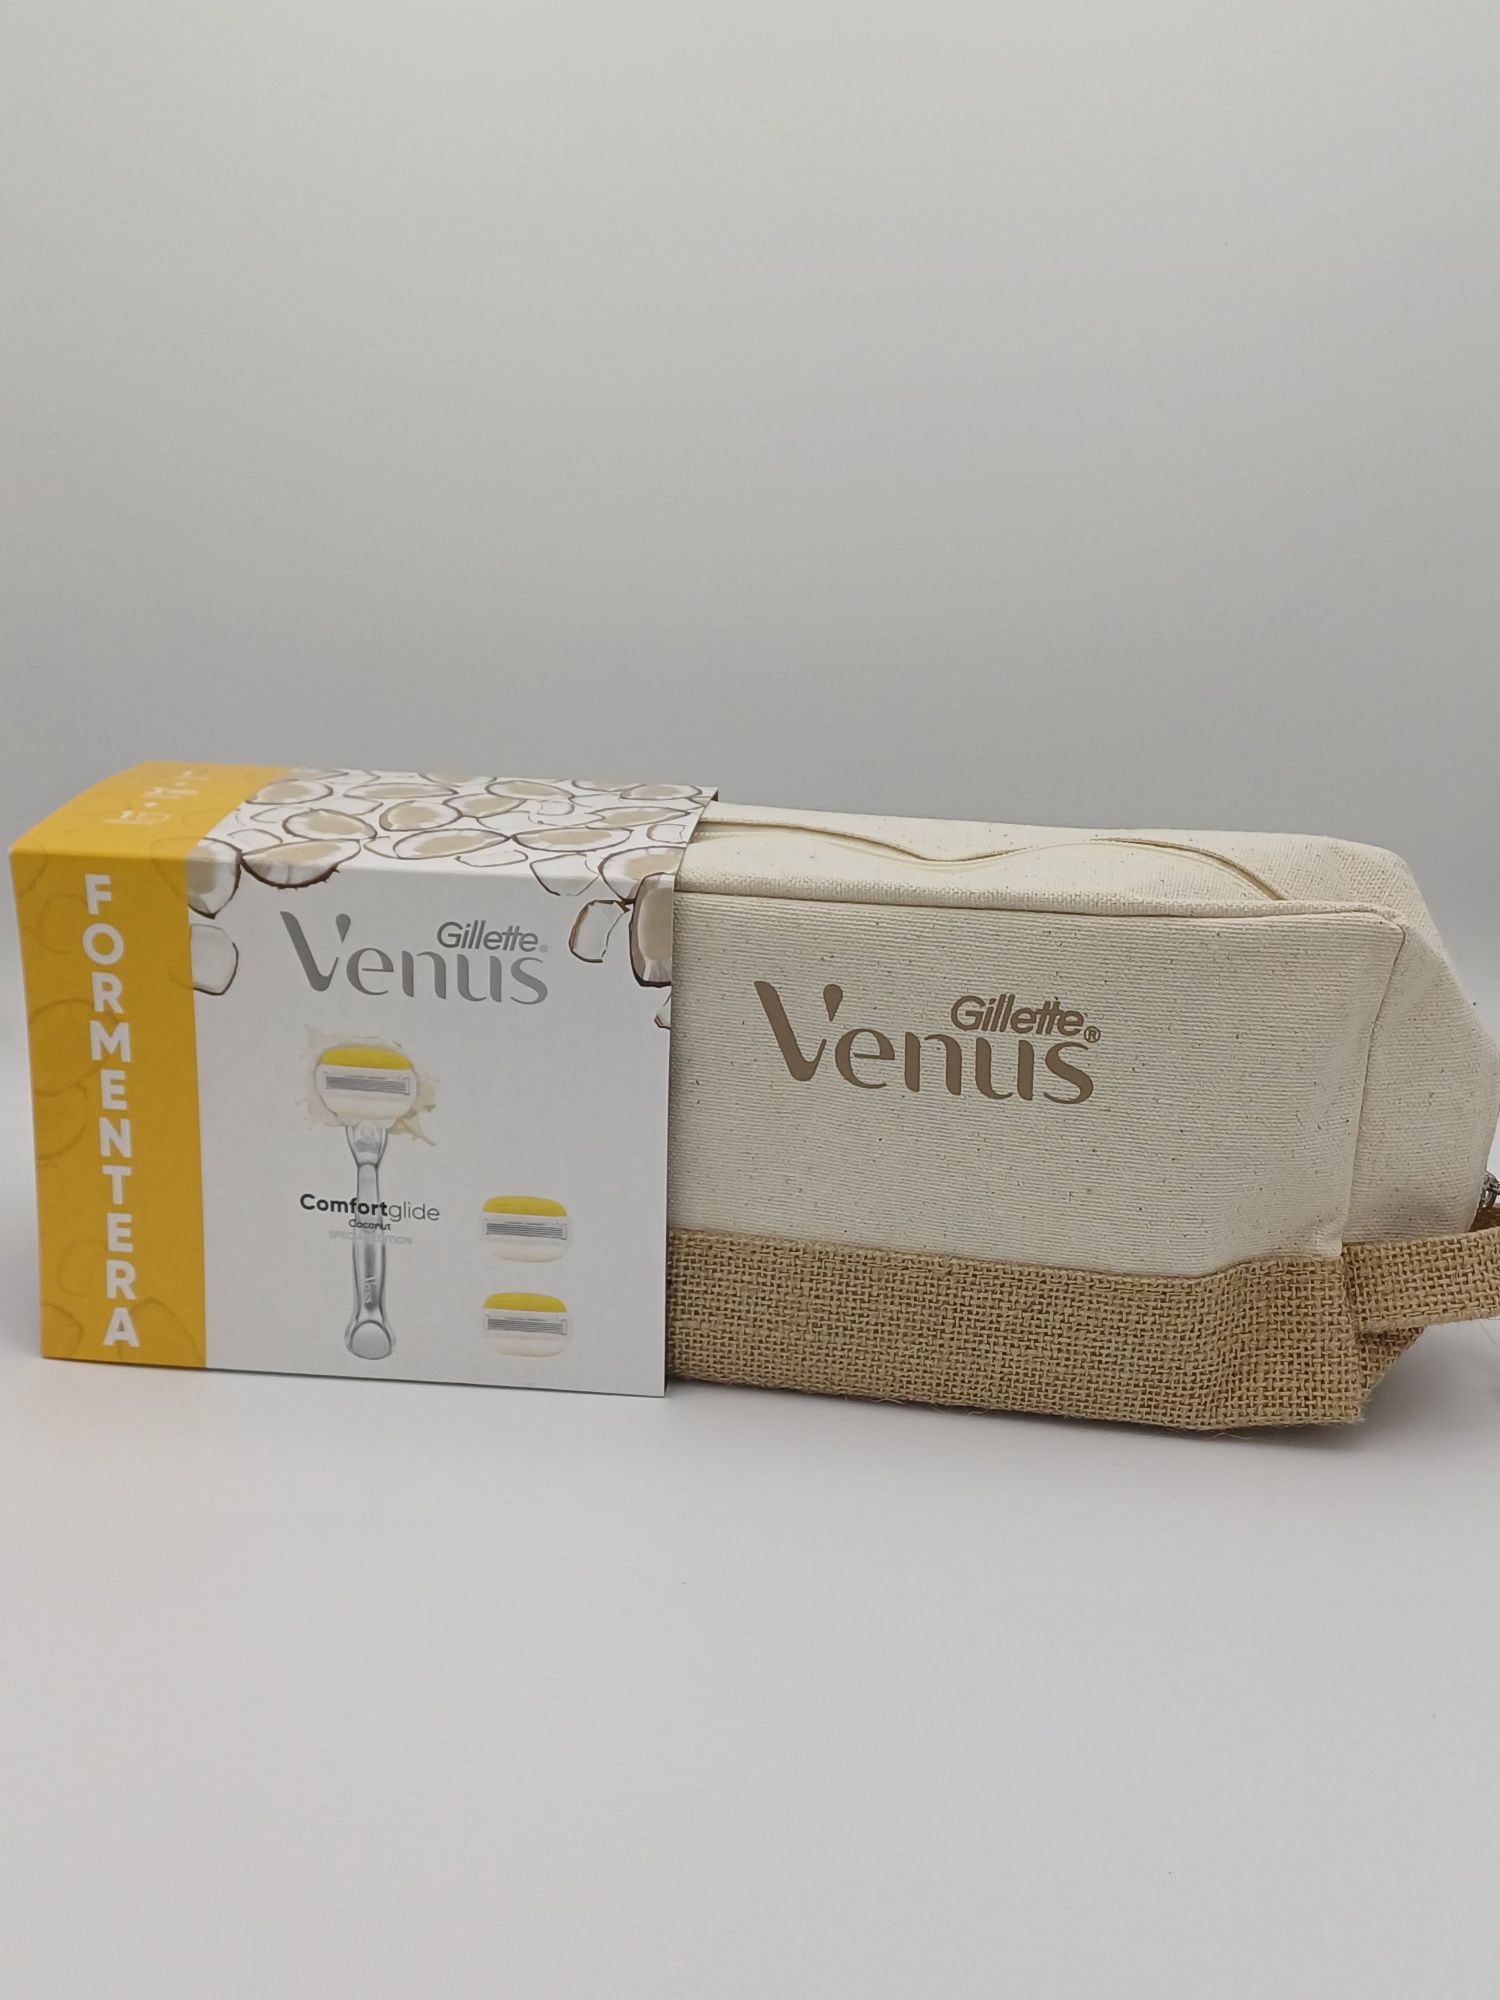 Set Gillette Venus Ibiza și Formentera cu rezerve și geanta .